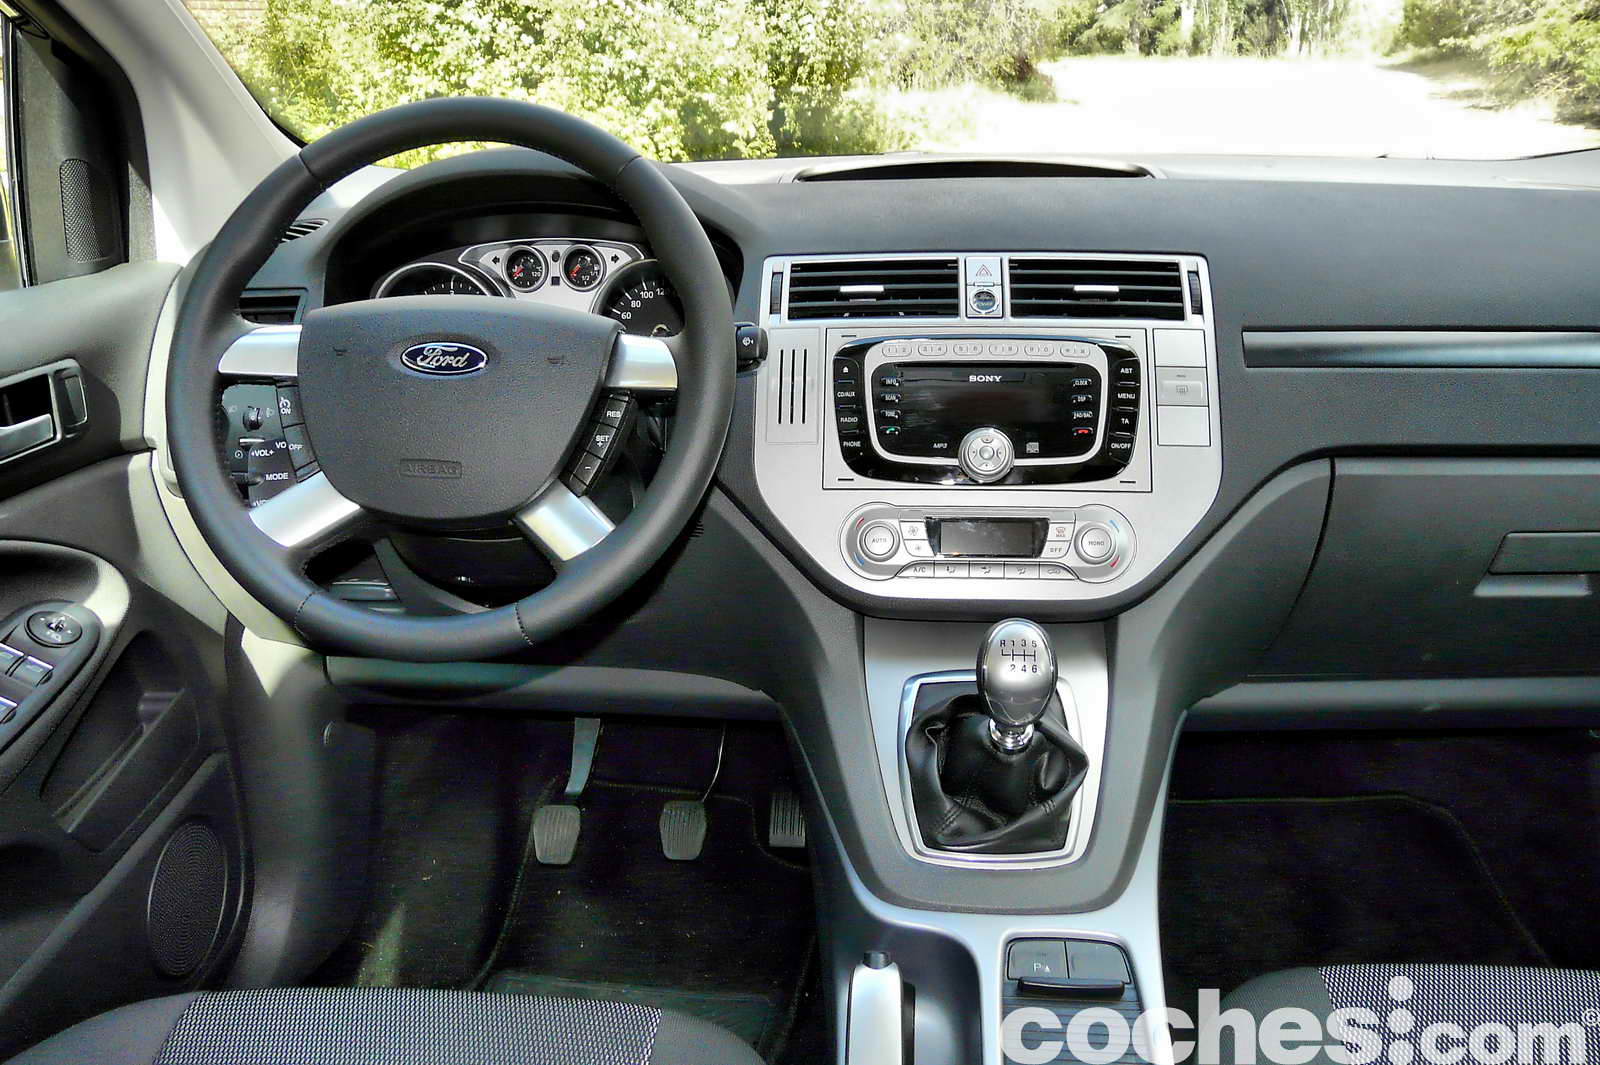 Ford kuga interior pics #1